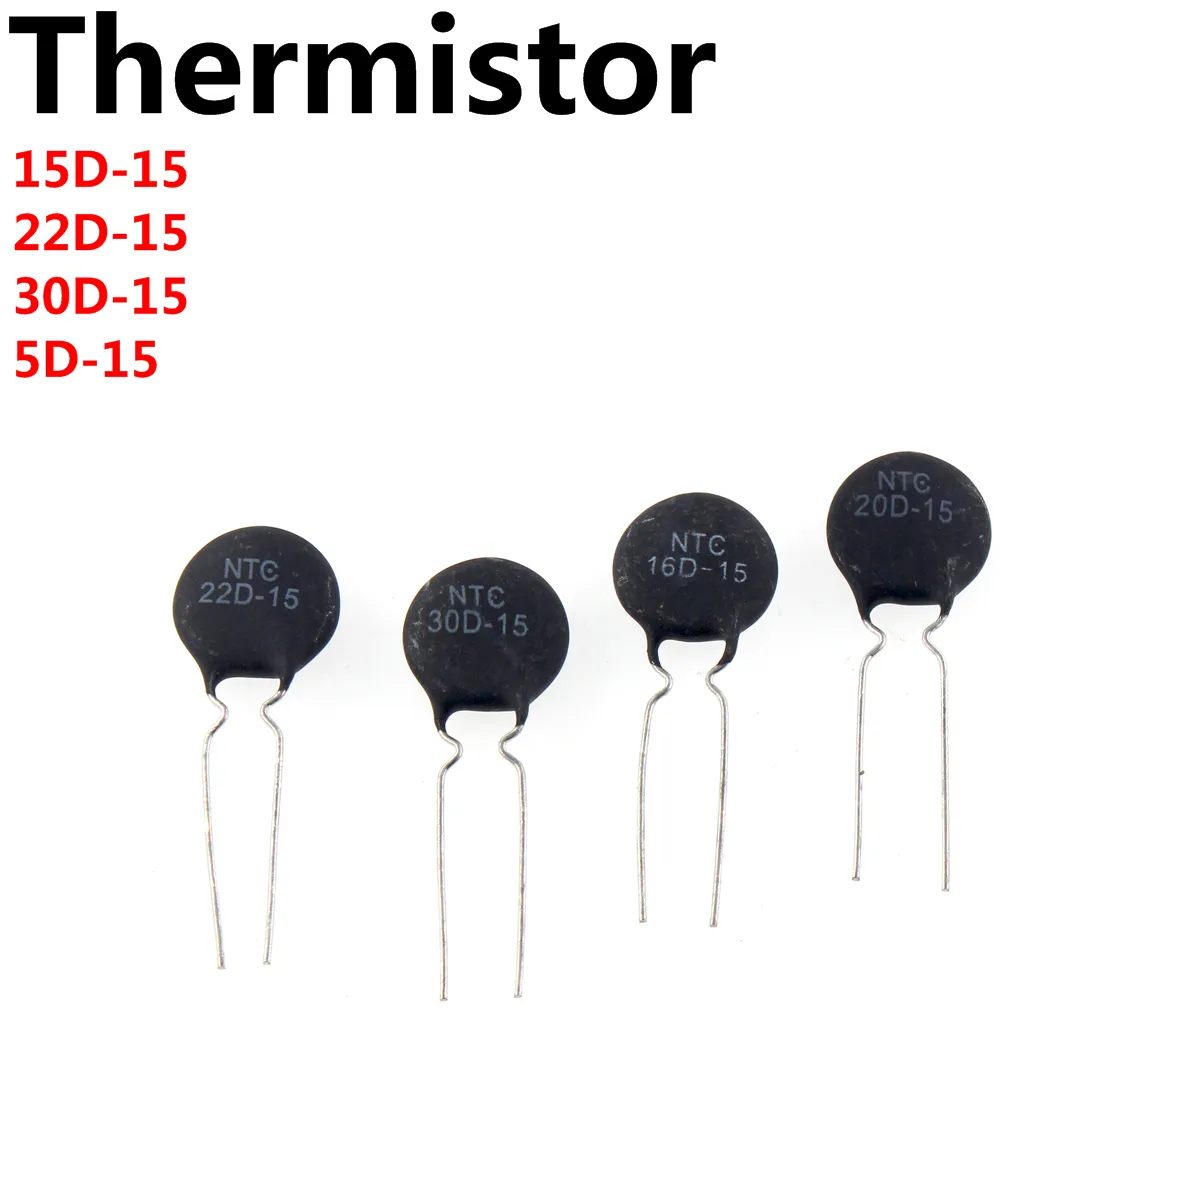 50pcs NTC Thermistance Resistor 1.5D-15 10D-15 16D-15 2.5D-15 20D-15 3D-15 47D-15 8D-15 15D-15 22D-15 30D-15 5D-15